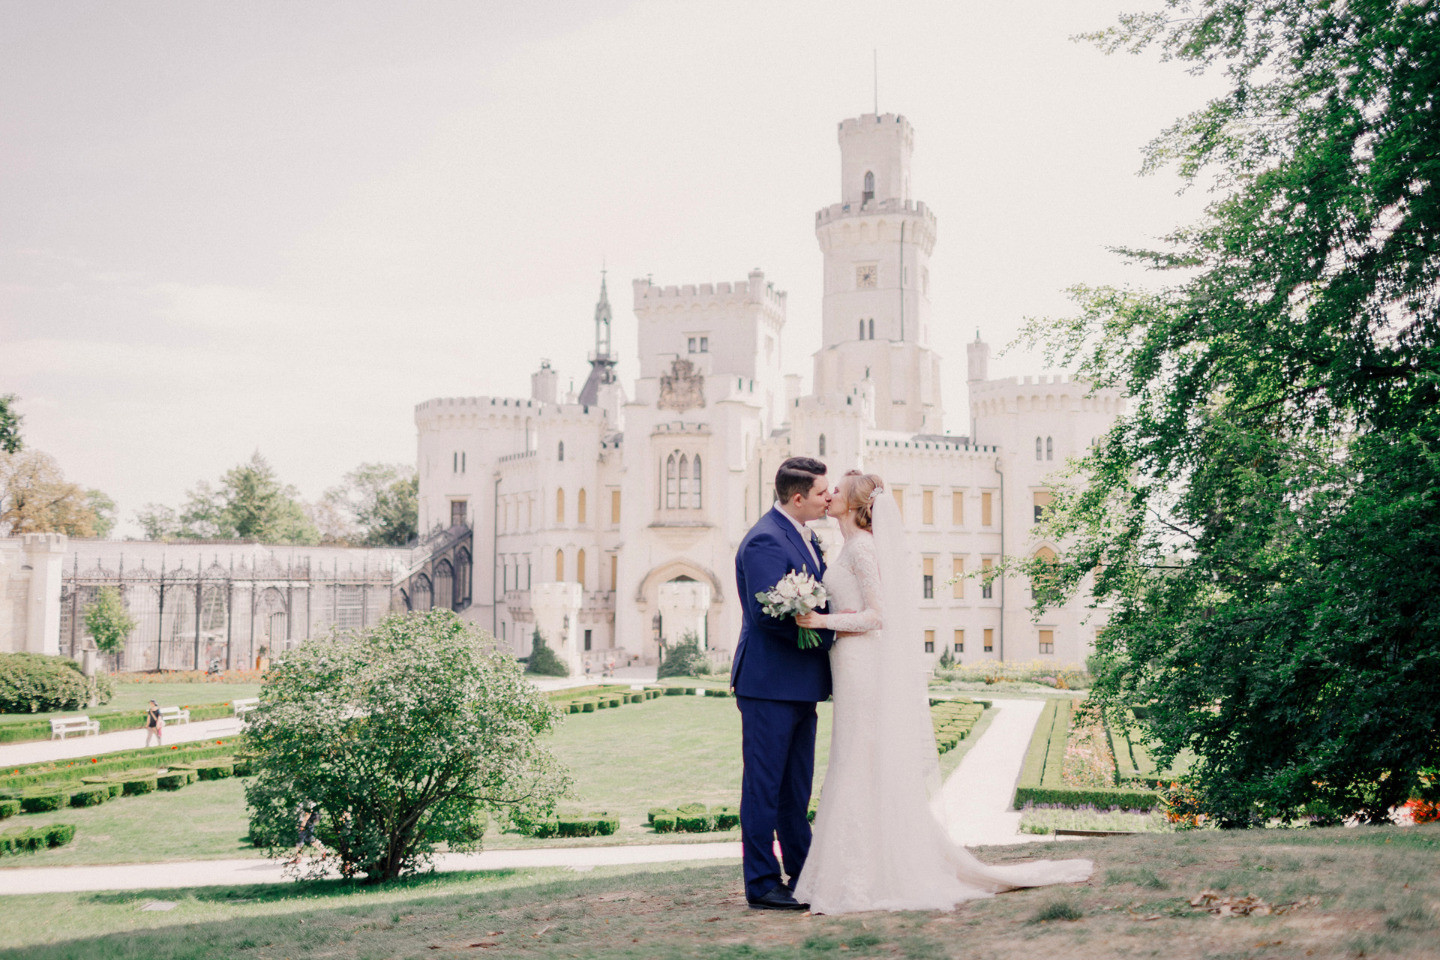 Счастье для двоих: свадьба в чешском замке